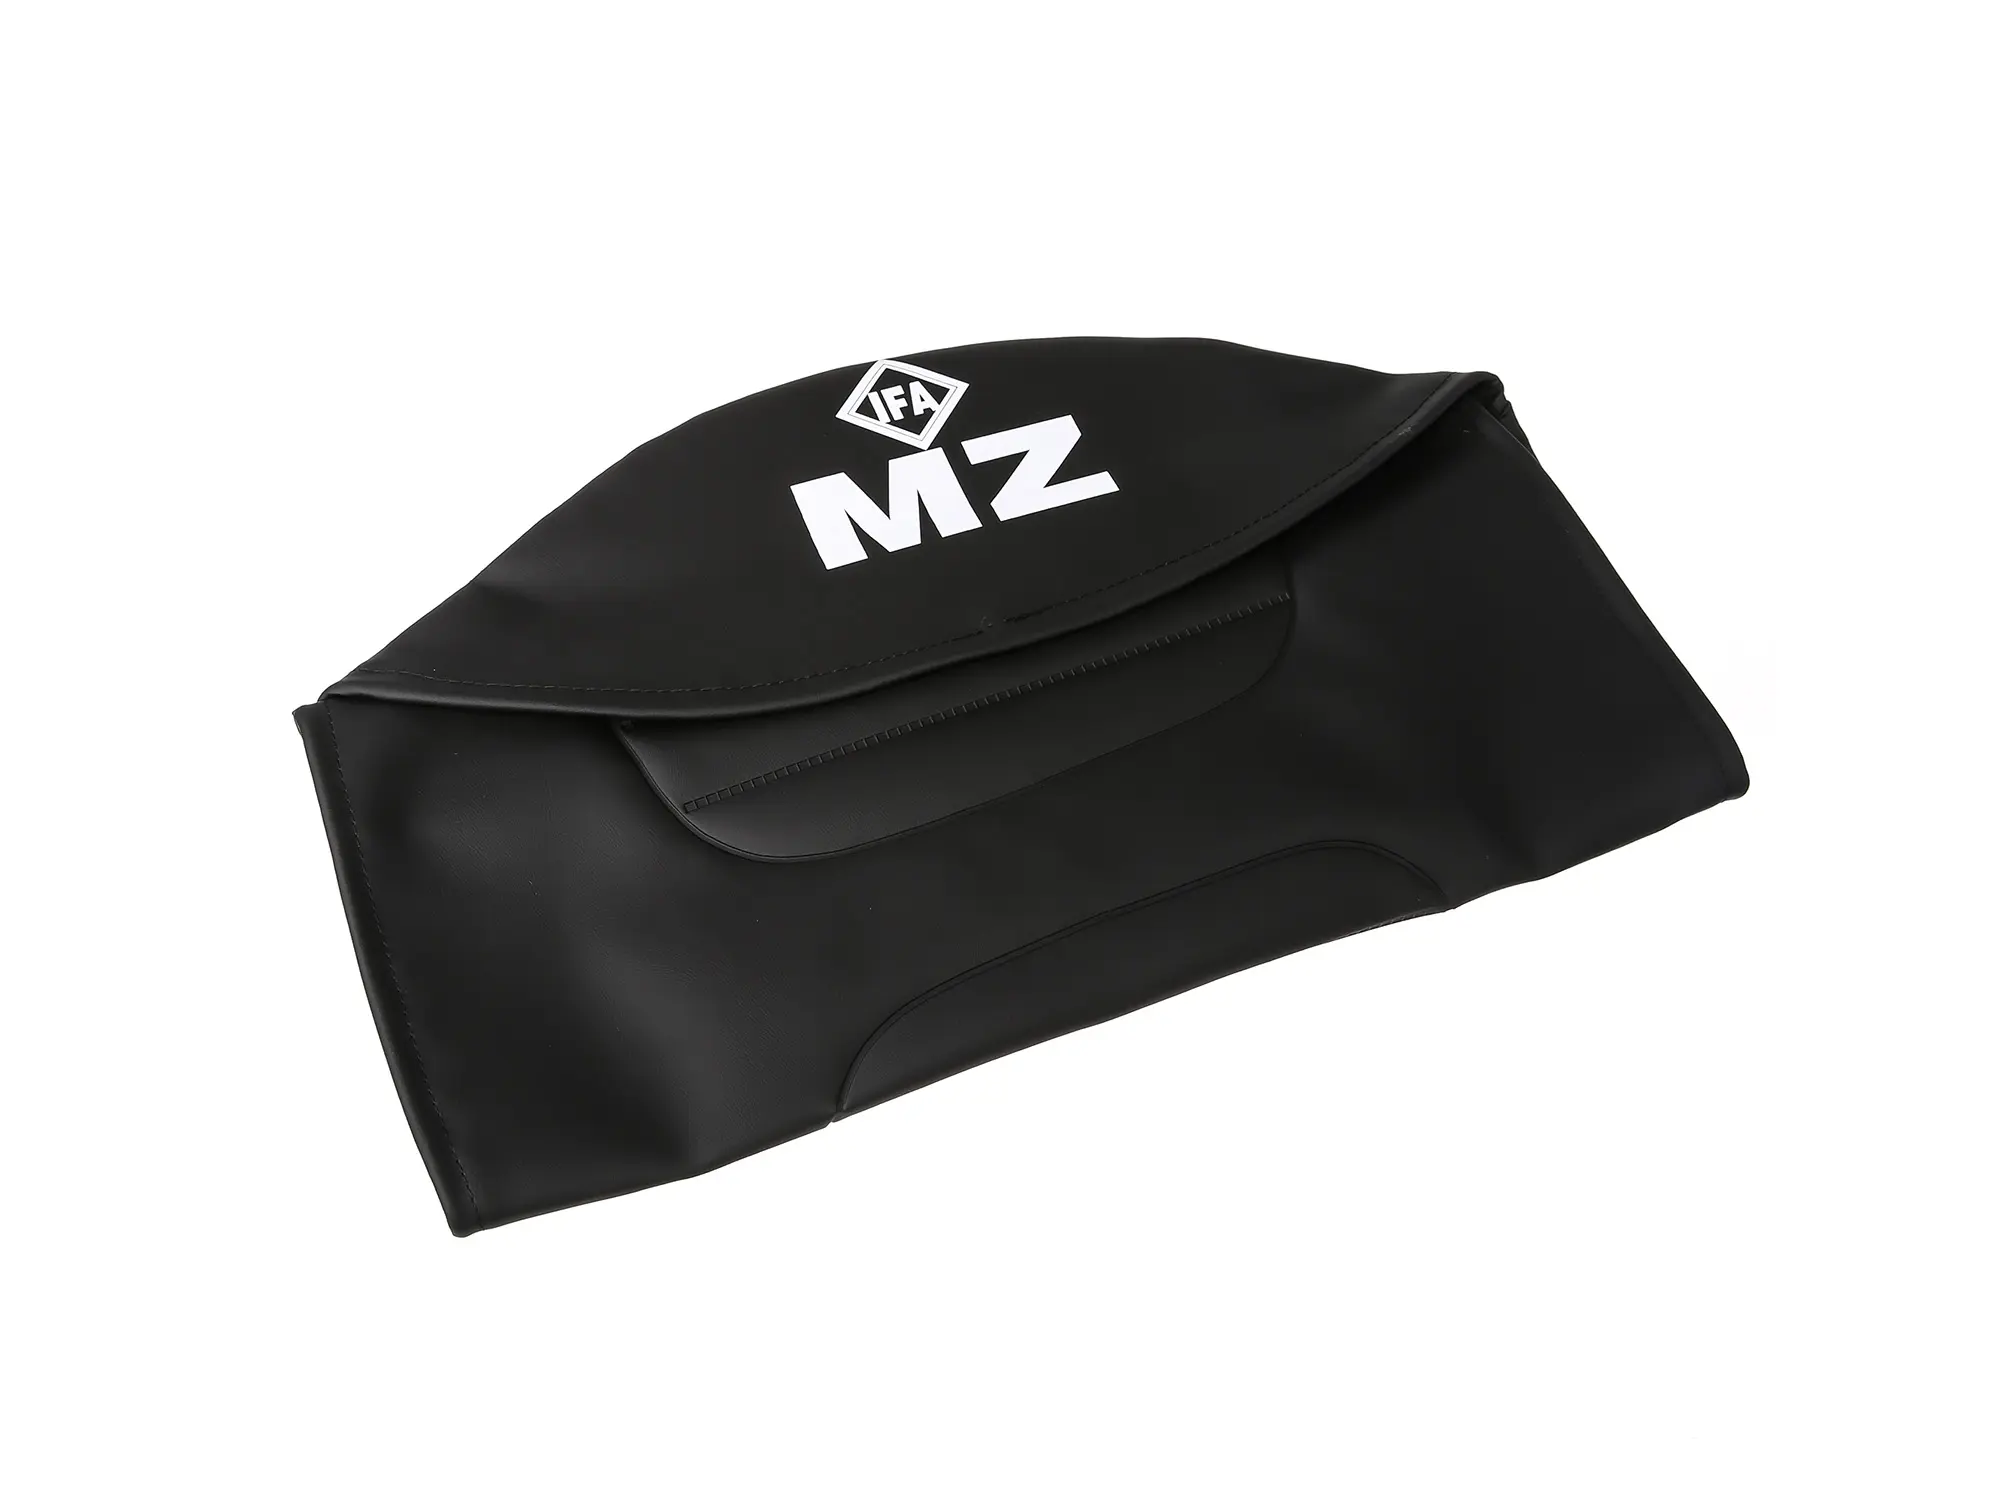 Sitzbezug strukturiert, schwarz mit MZ-Schriftzug - für MZ ETZ250, Art.-Nr.: 10055998 - Bild 1